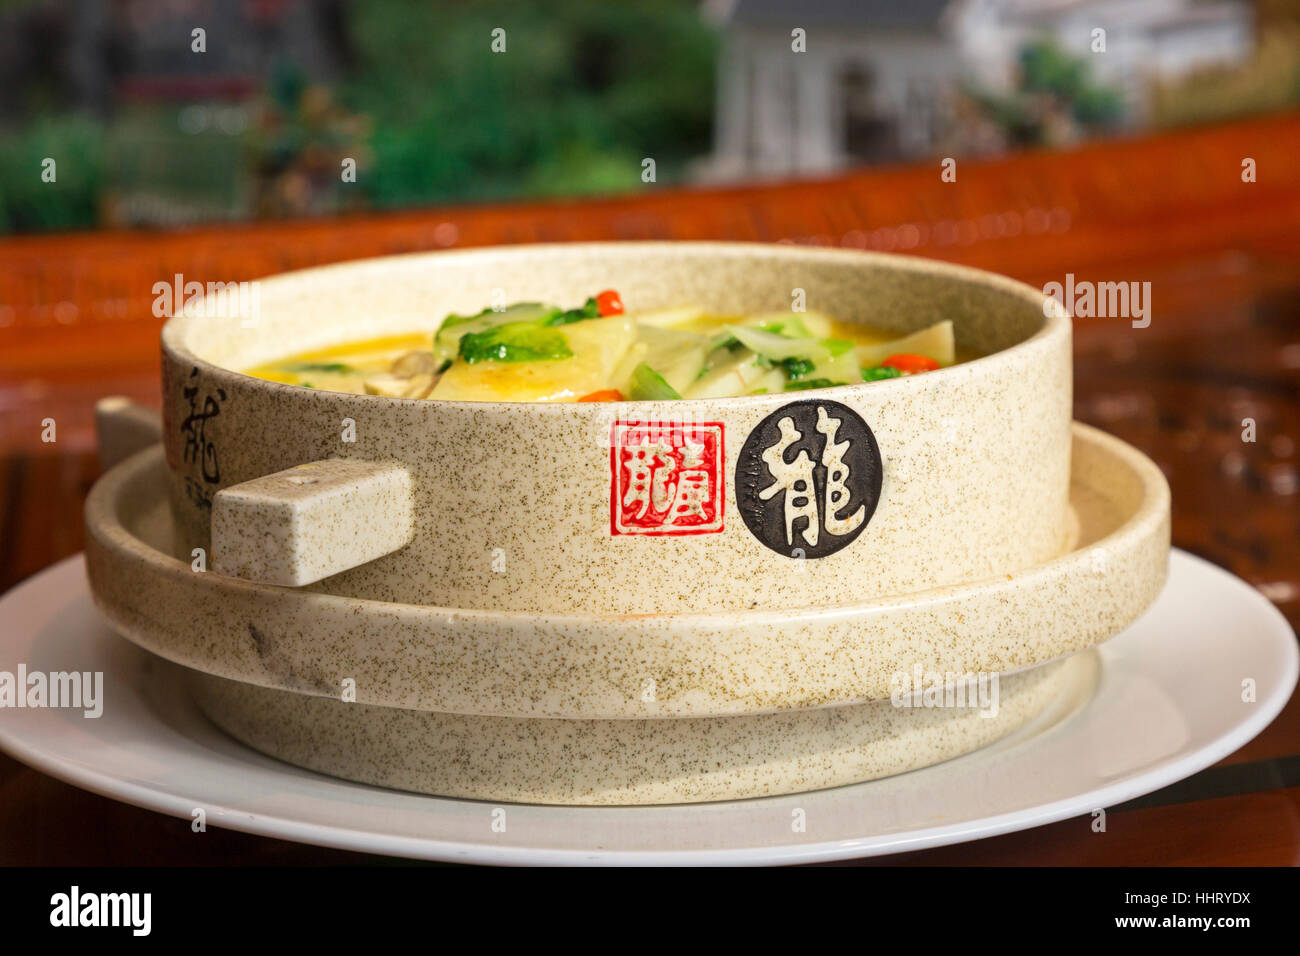 Food at Chinese restaurant, Wuzhong, Ningxia province, China Stock Photo